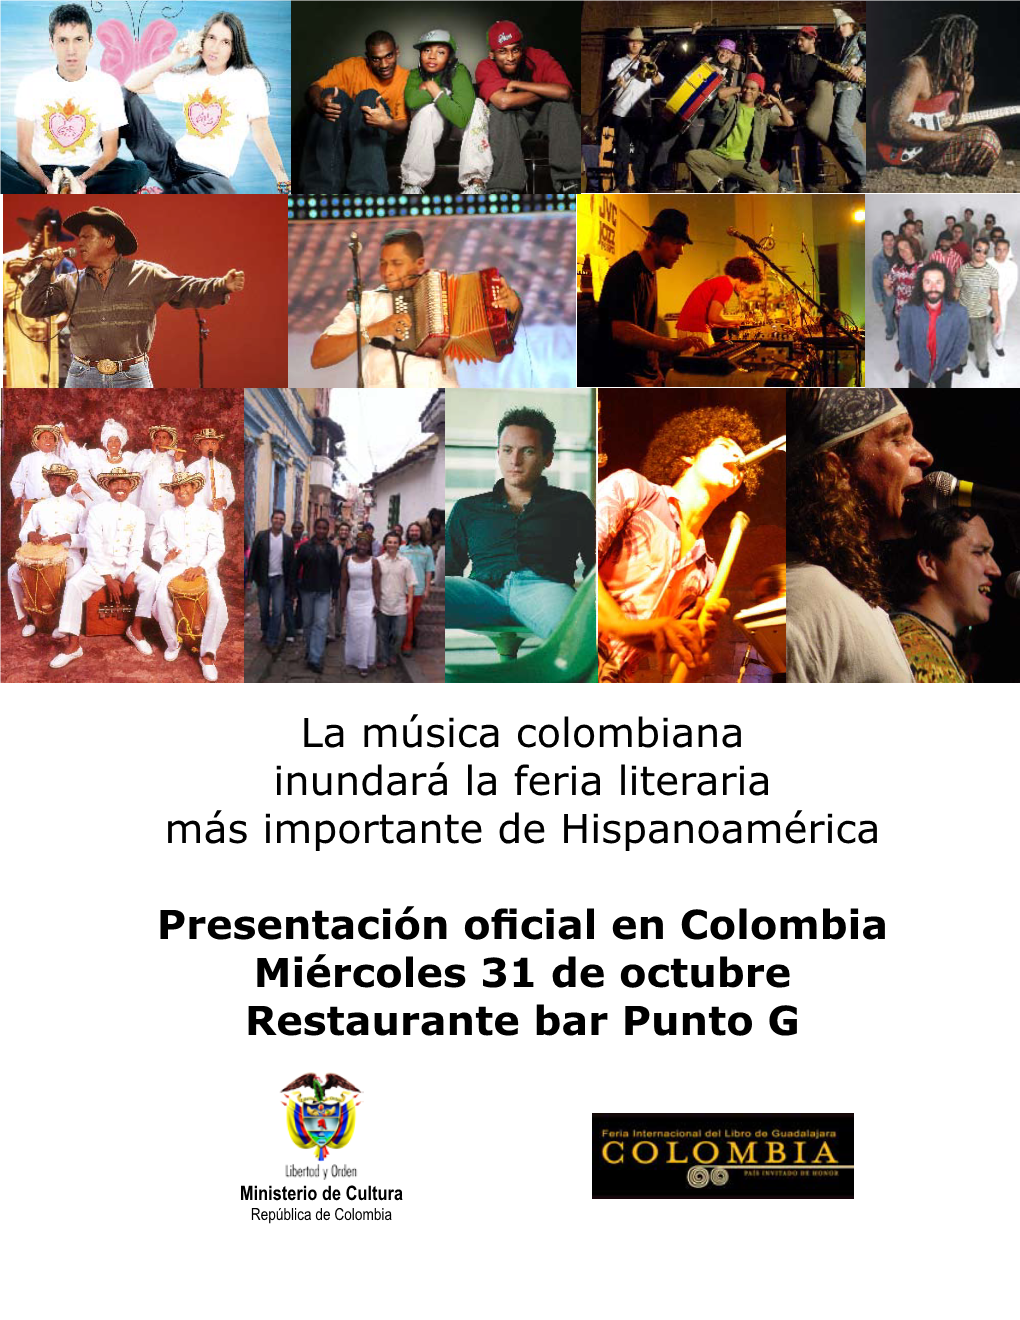 La Música Colombiana Inundará La Feria Literaria Más Importante De Hispanoamérica